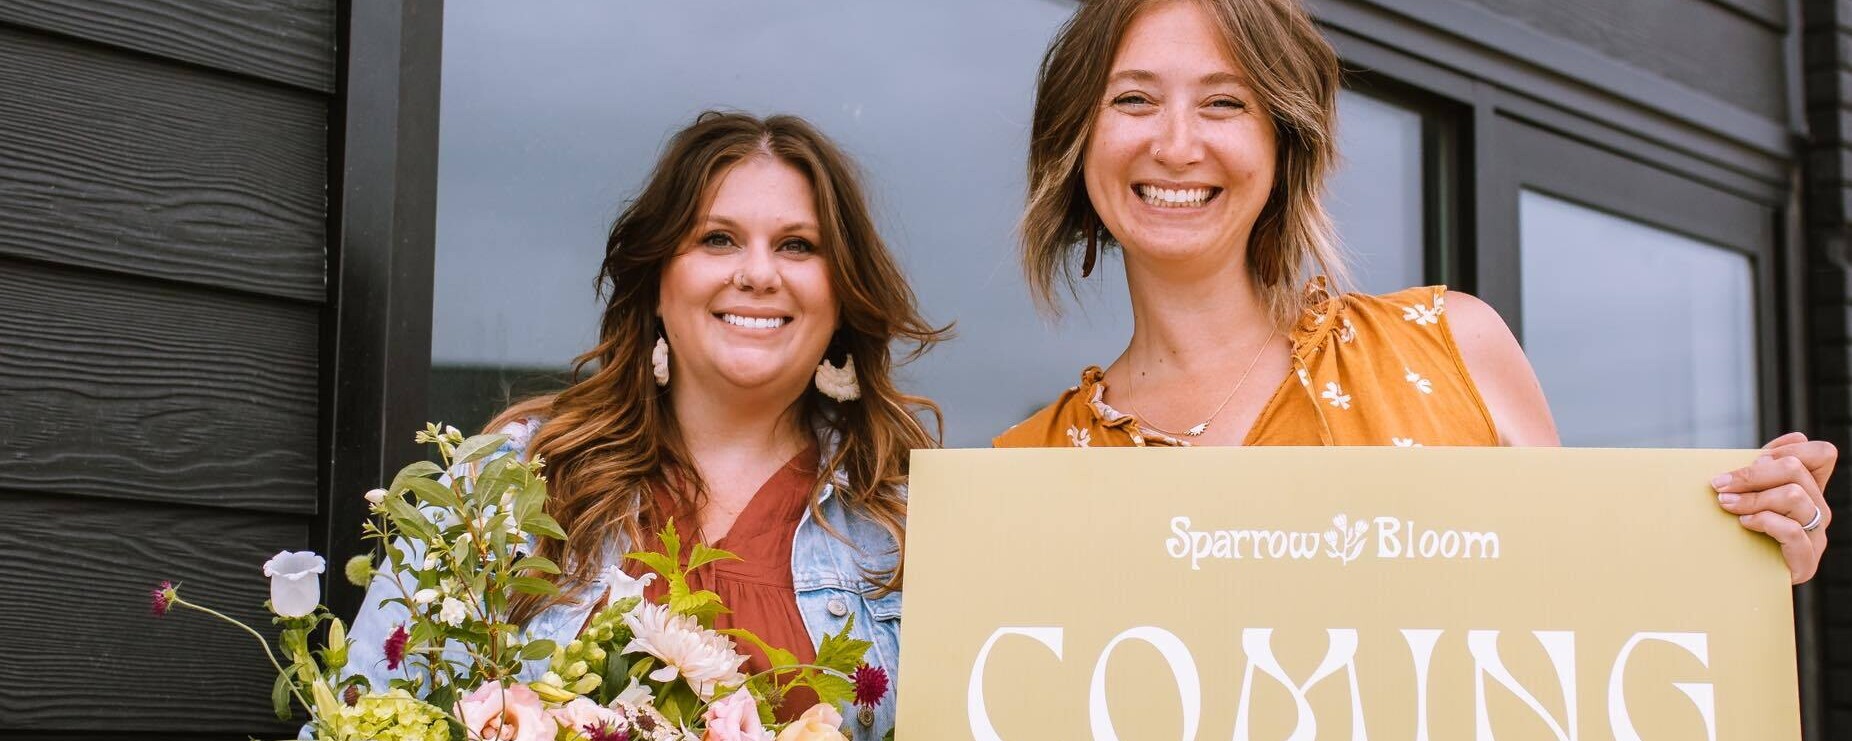 Dos mujeres posan delante de su nuevo escaparate: una sostiene un ramo de flores mientras la otra sostiene un cartel en el que se lee "¡Próxima apertura!".